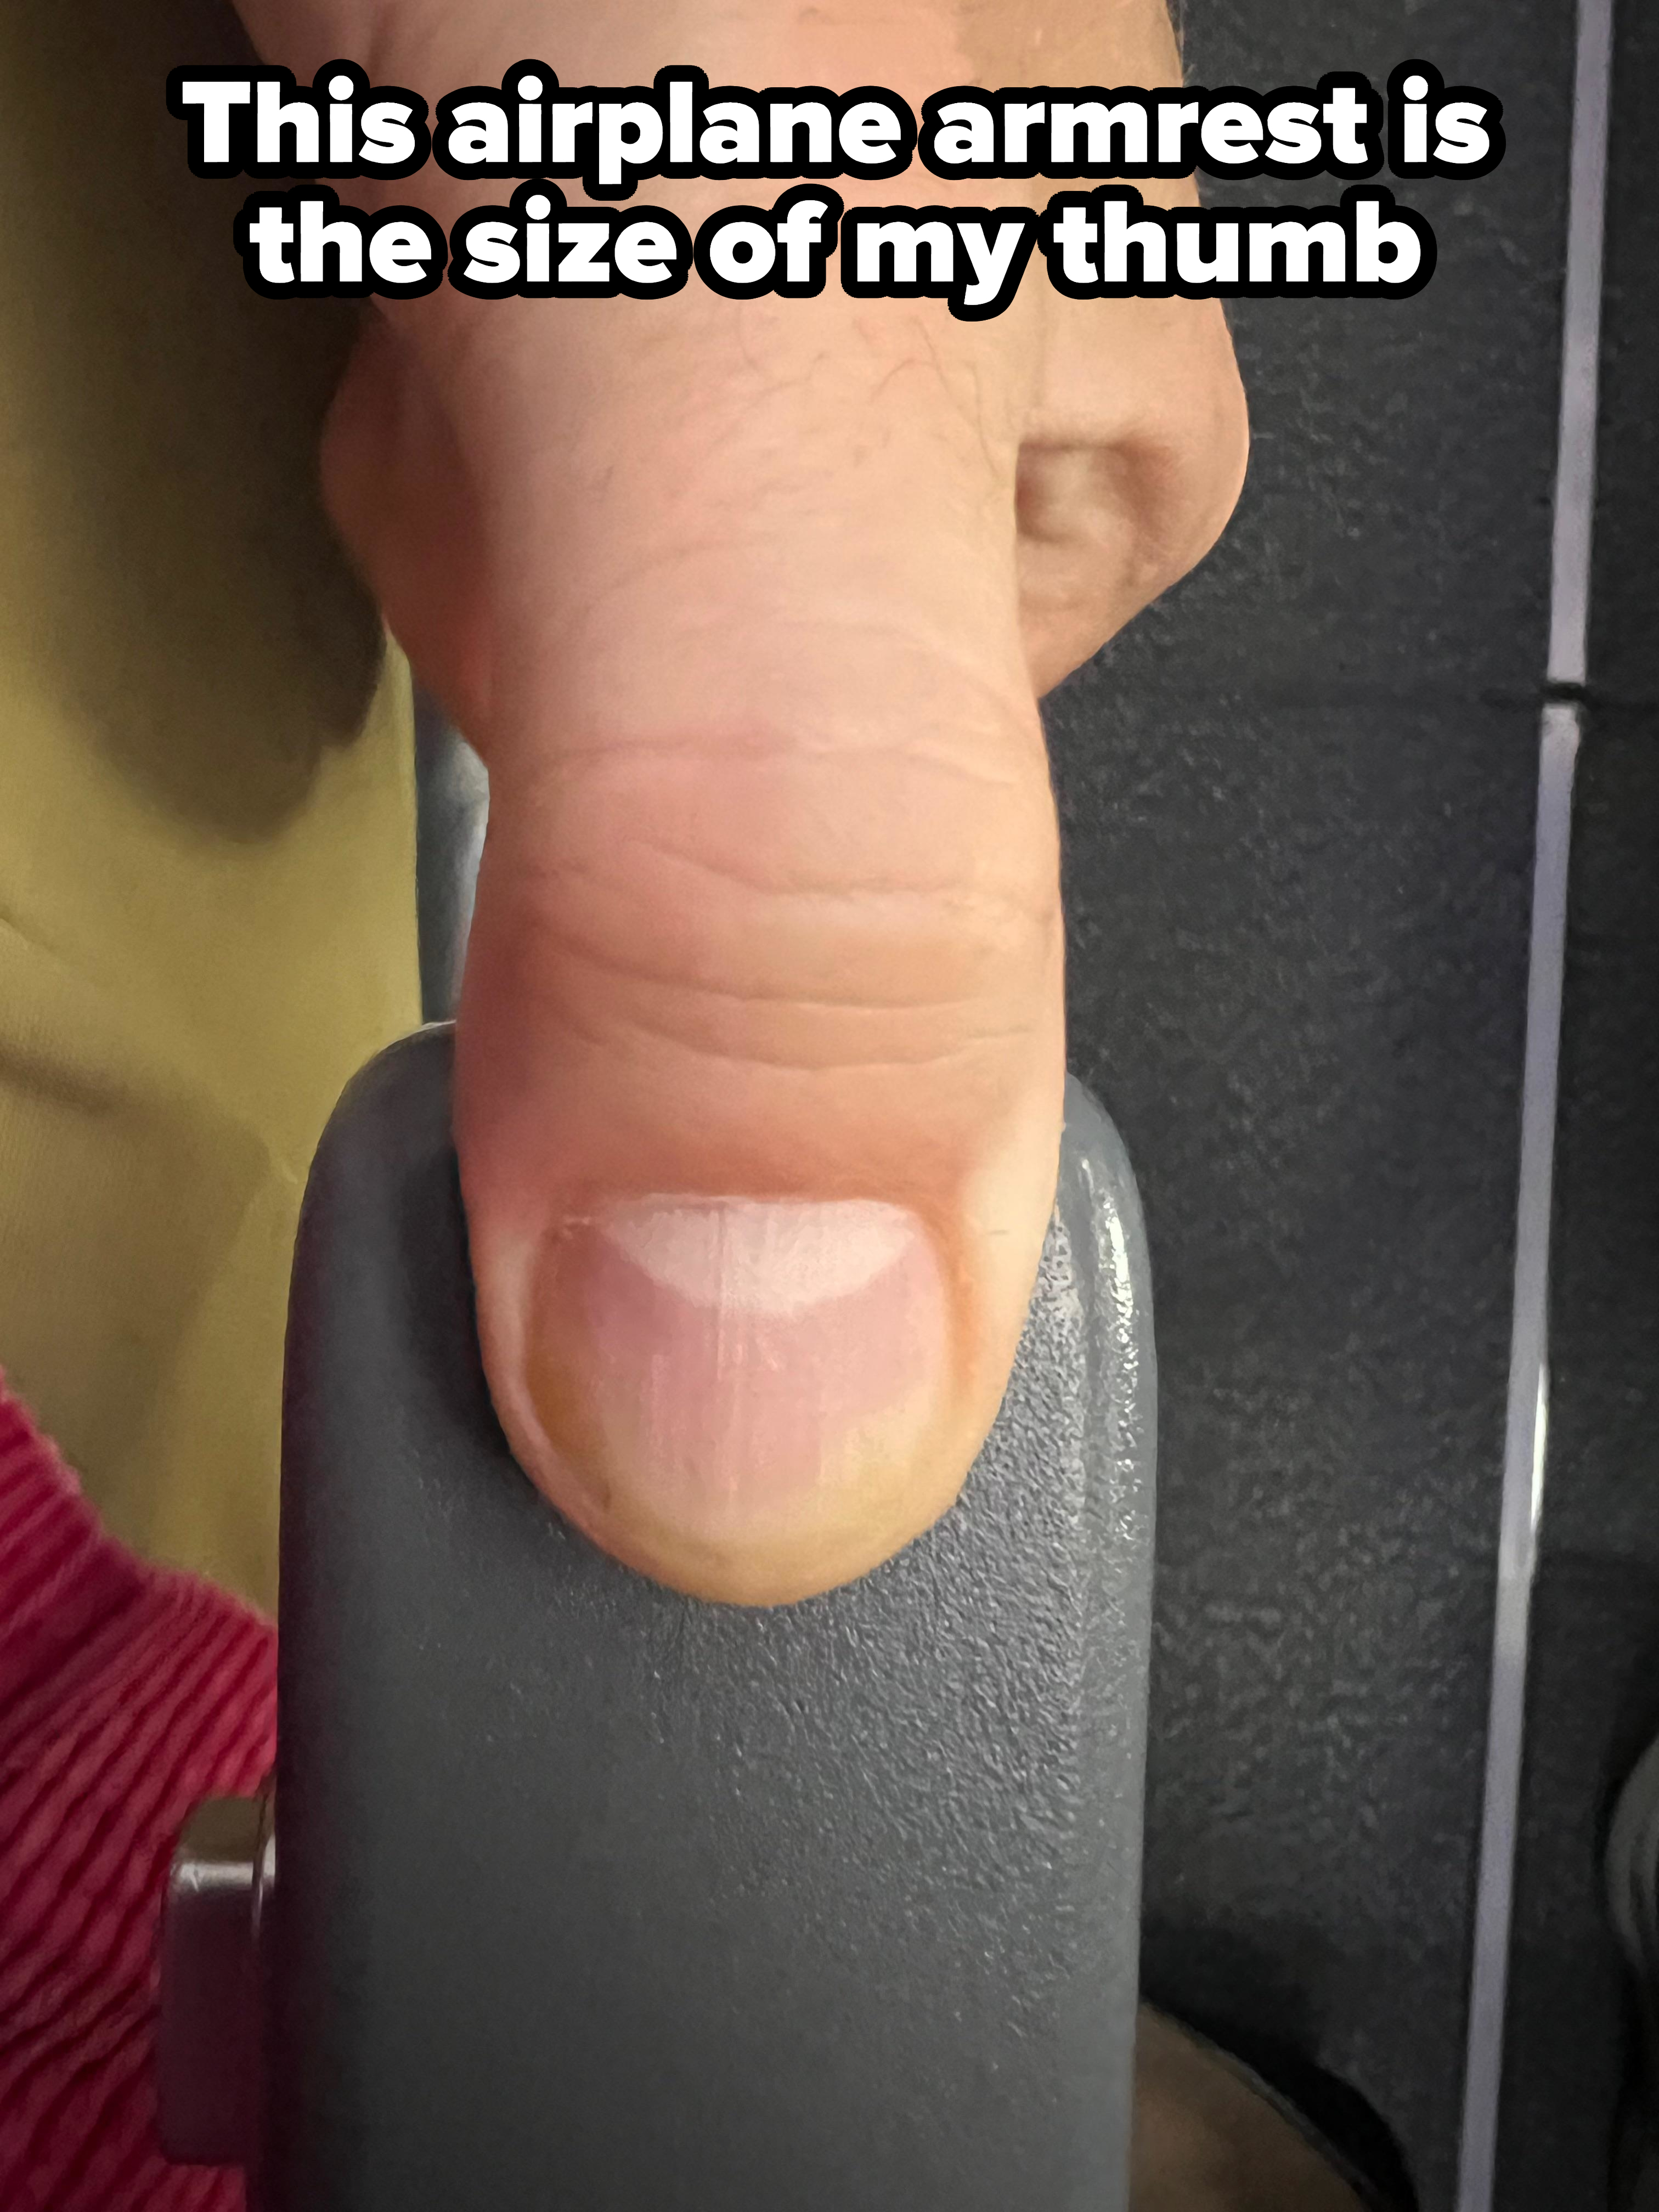 A thumb on an armrest